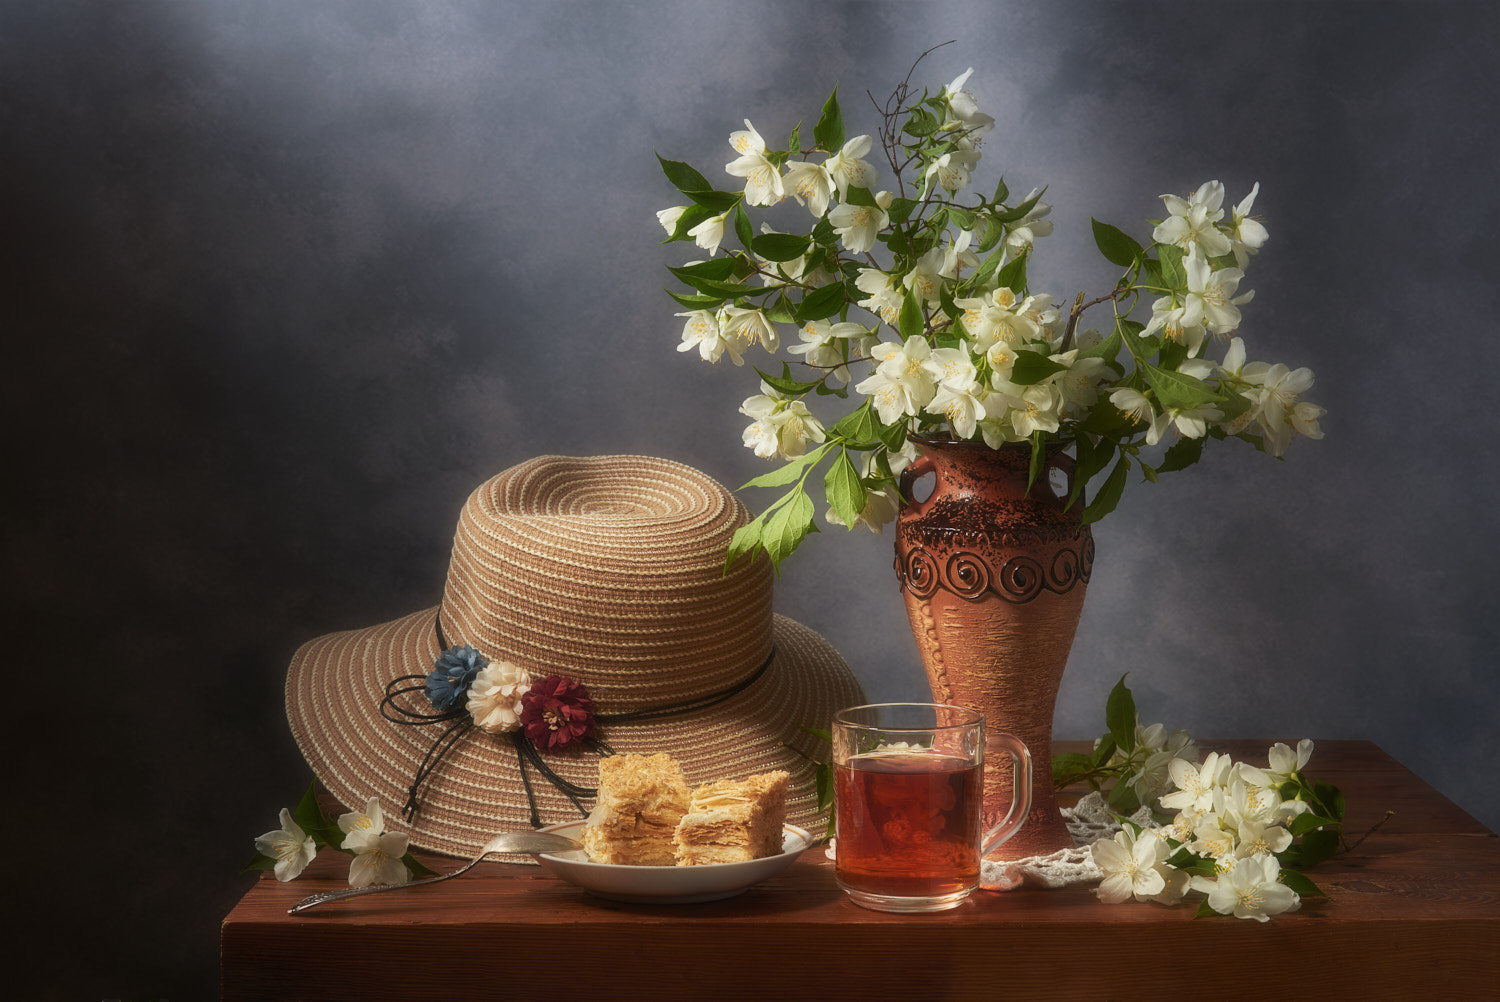 Летний-2 натюрморт композиция постановка сцена предметы цветы букет чай шляпа торт